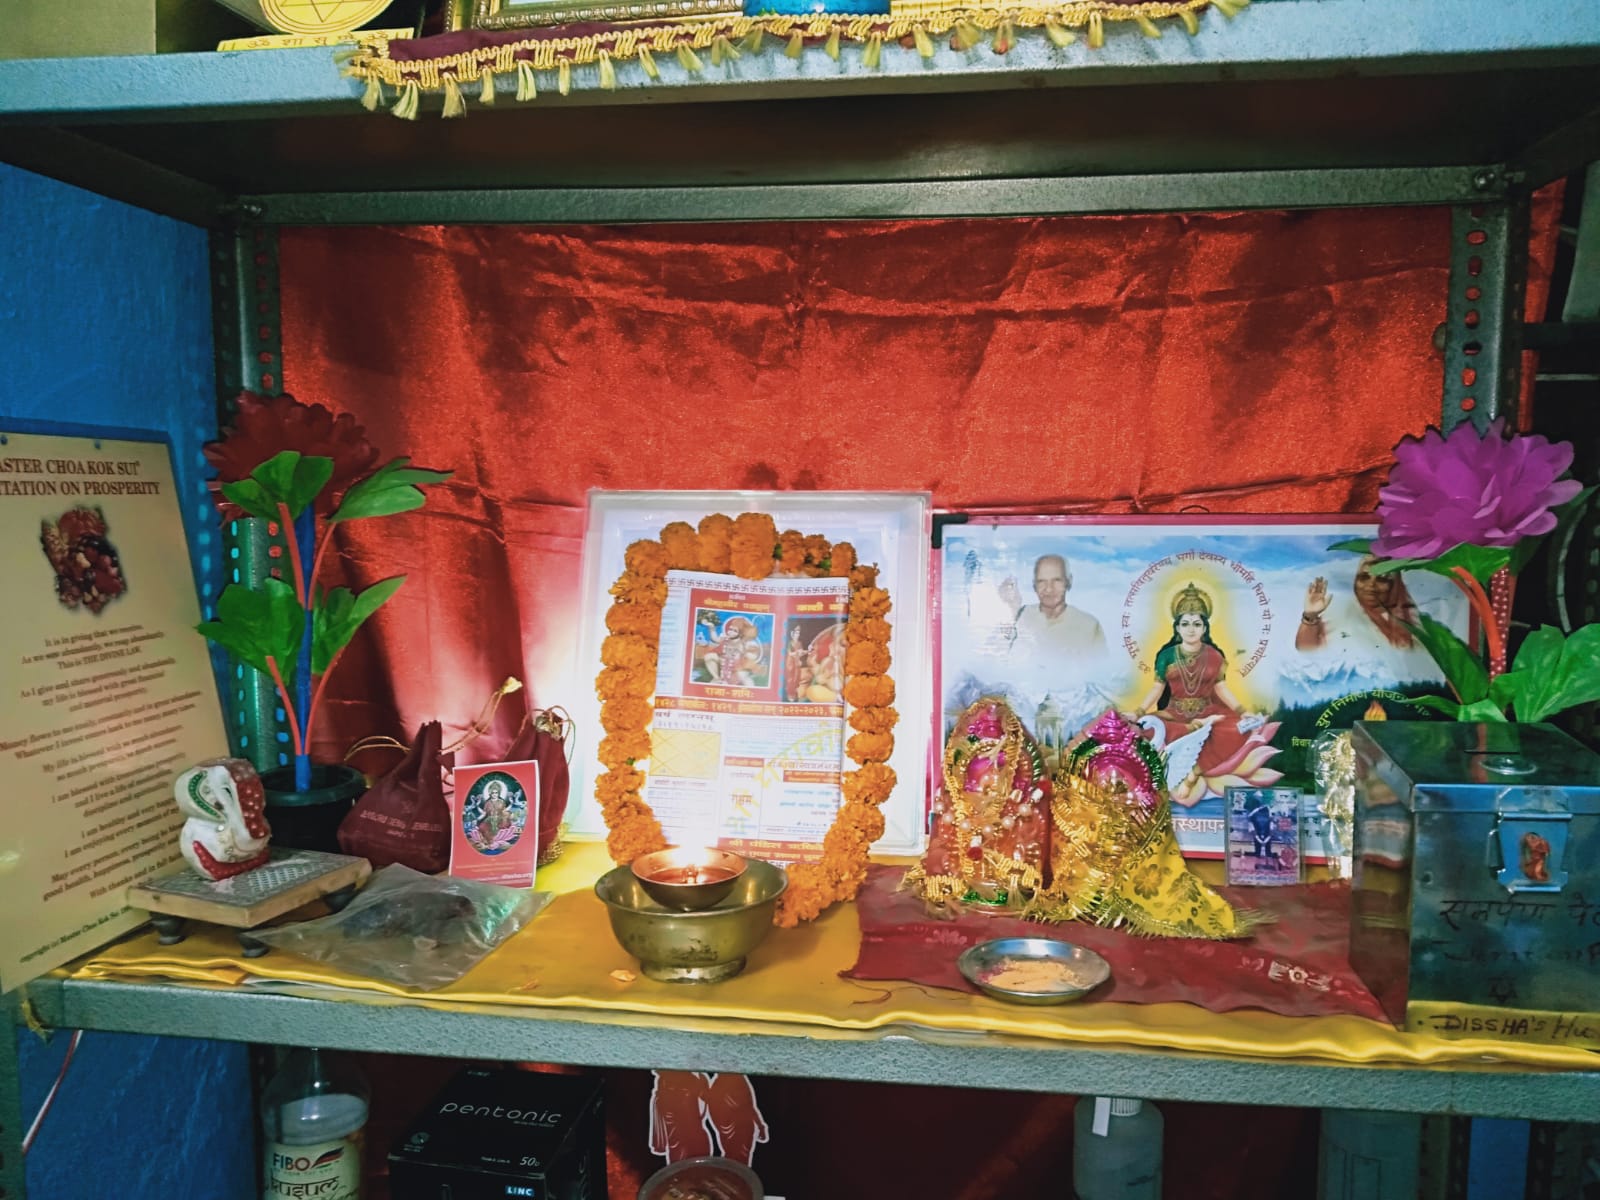 “भारतीय नव वर्ष”डिवाईन इंडिया सायंस एण्ड स्प्रिचुअल हैप्पीनेस एसोसिएशन-दिशा” की शाखा मे मनाई गई–हरीपुर